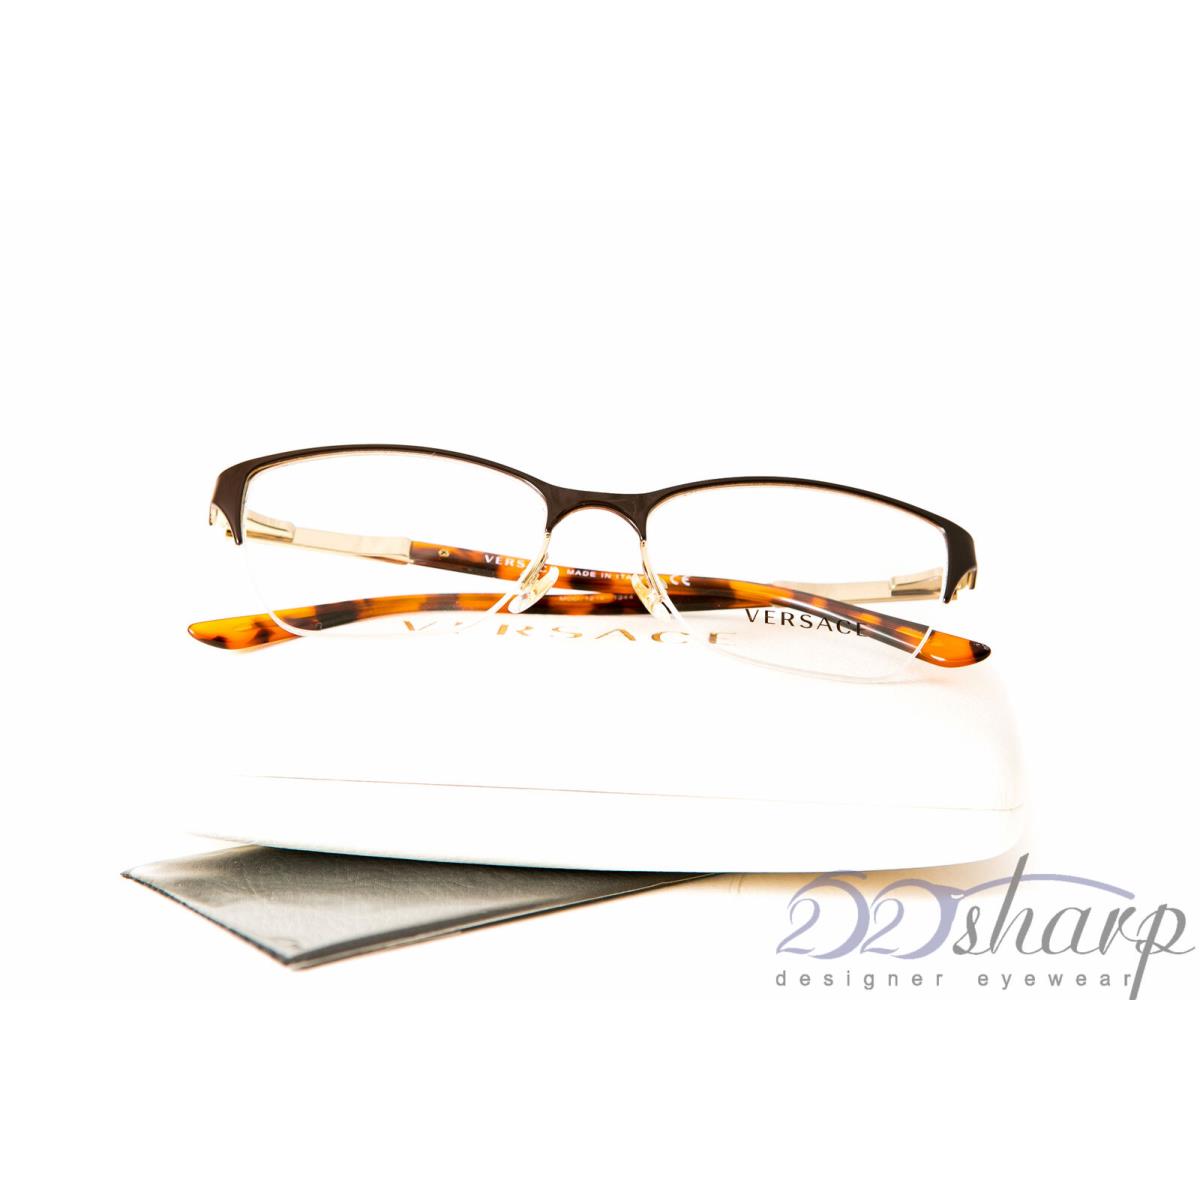 Versace Eyeglasses-versace 1218 1344 53-17 Pale Gold